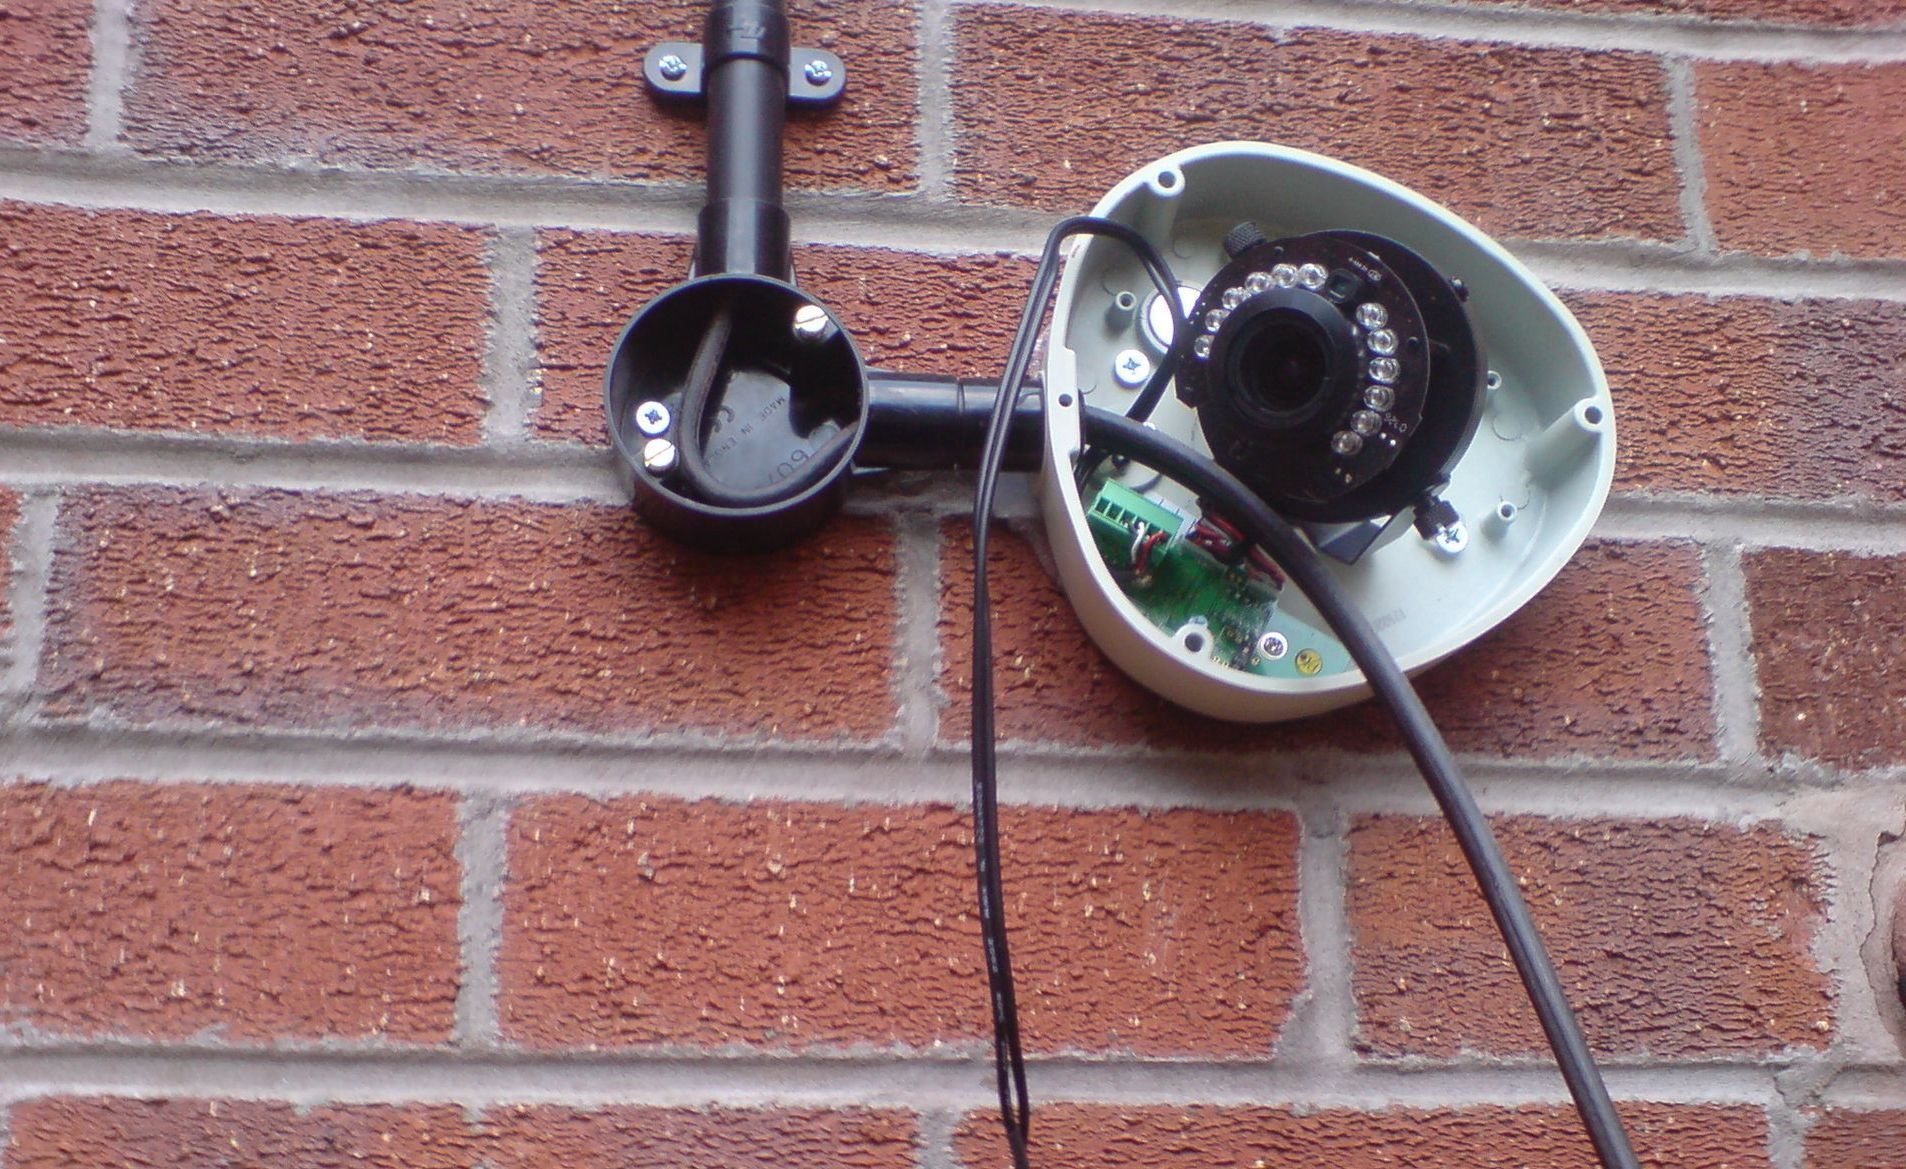 CCTV repairs